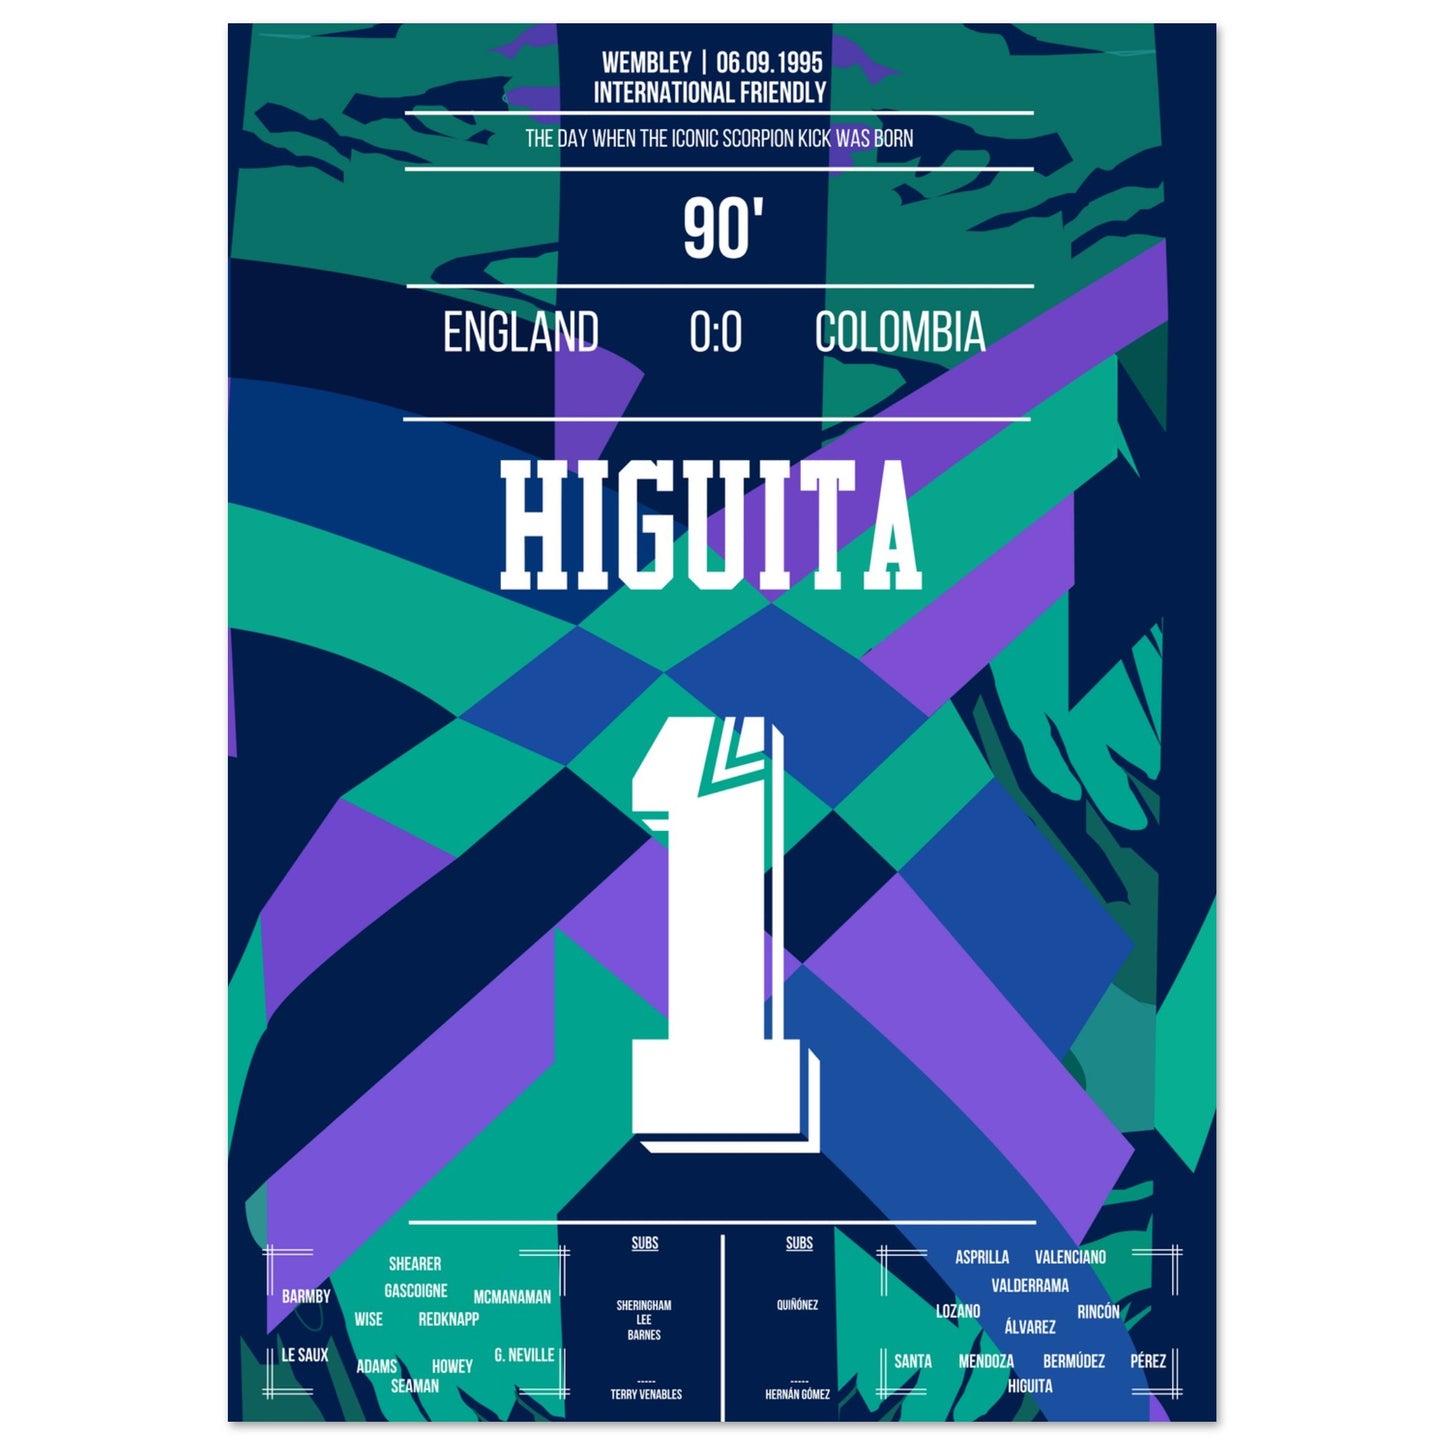 Higuita's Scorpion-Kick gegen England 1996